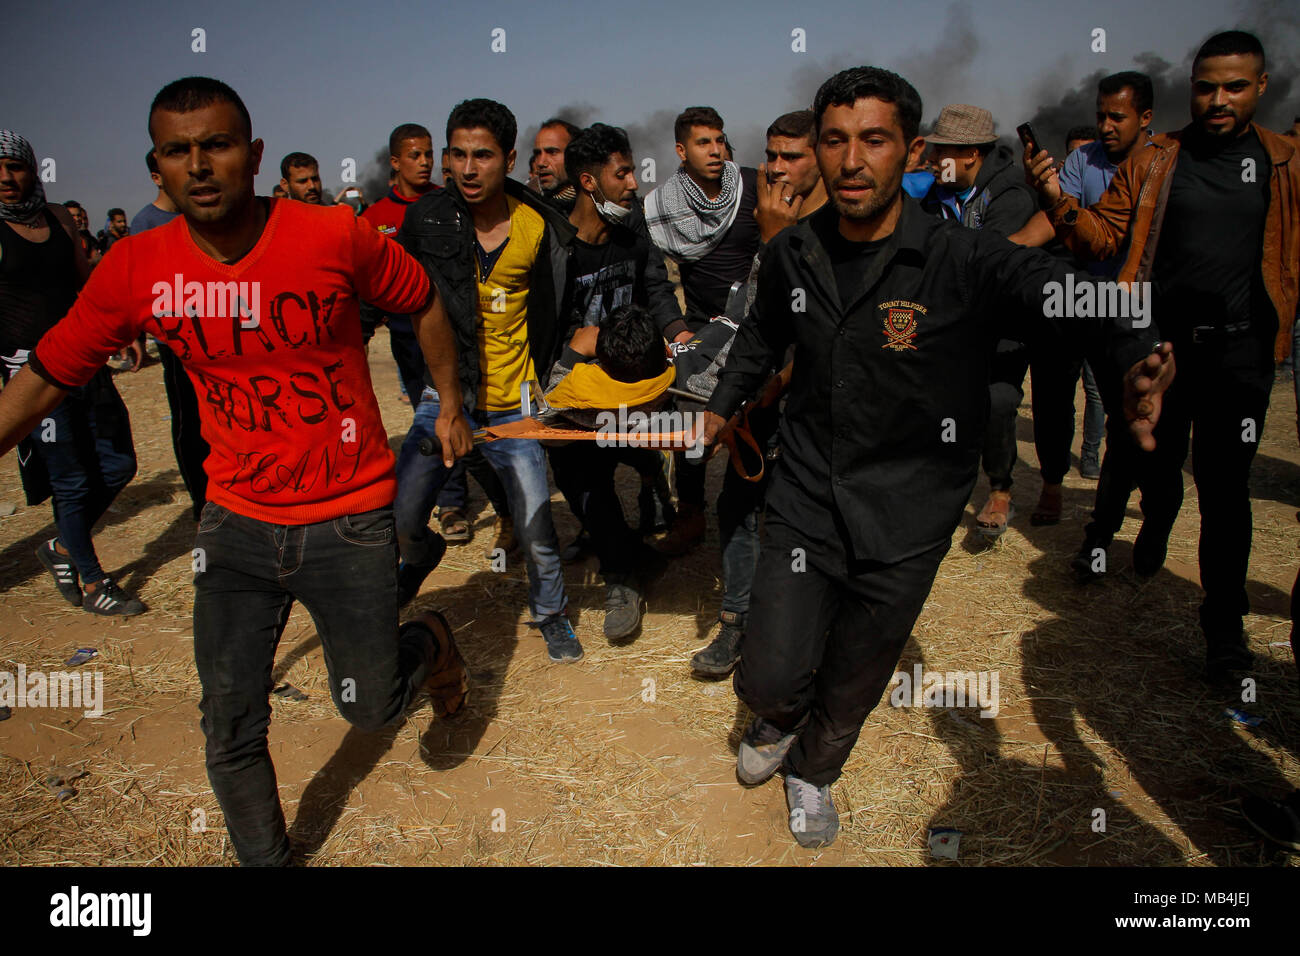 April 6, 2018 - Unruhen ausbrechen zwischen palästinensischen Demonstranten und israelischen Sicherheitskräften auf den Gazastreifen Grenze östlich der Stadt Khan Yunis im südlichen Gazastreifen. Während die Palästinenser "Demonstration, die Teil der "lange Marsch Rendite'' Ereignisse, eine Zahl der Palästinenser wurden von scharfer Munition verletzt und Gas bei Ihnen durch israelische Truppen gefeuert. Credit: ZUMA Press, Inc./Alamy leben Nachrichten Stockfoto